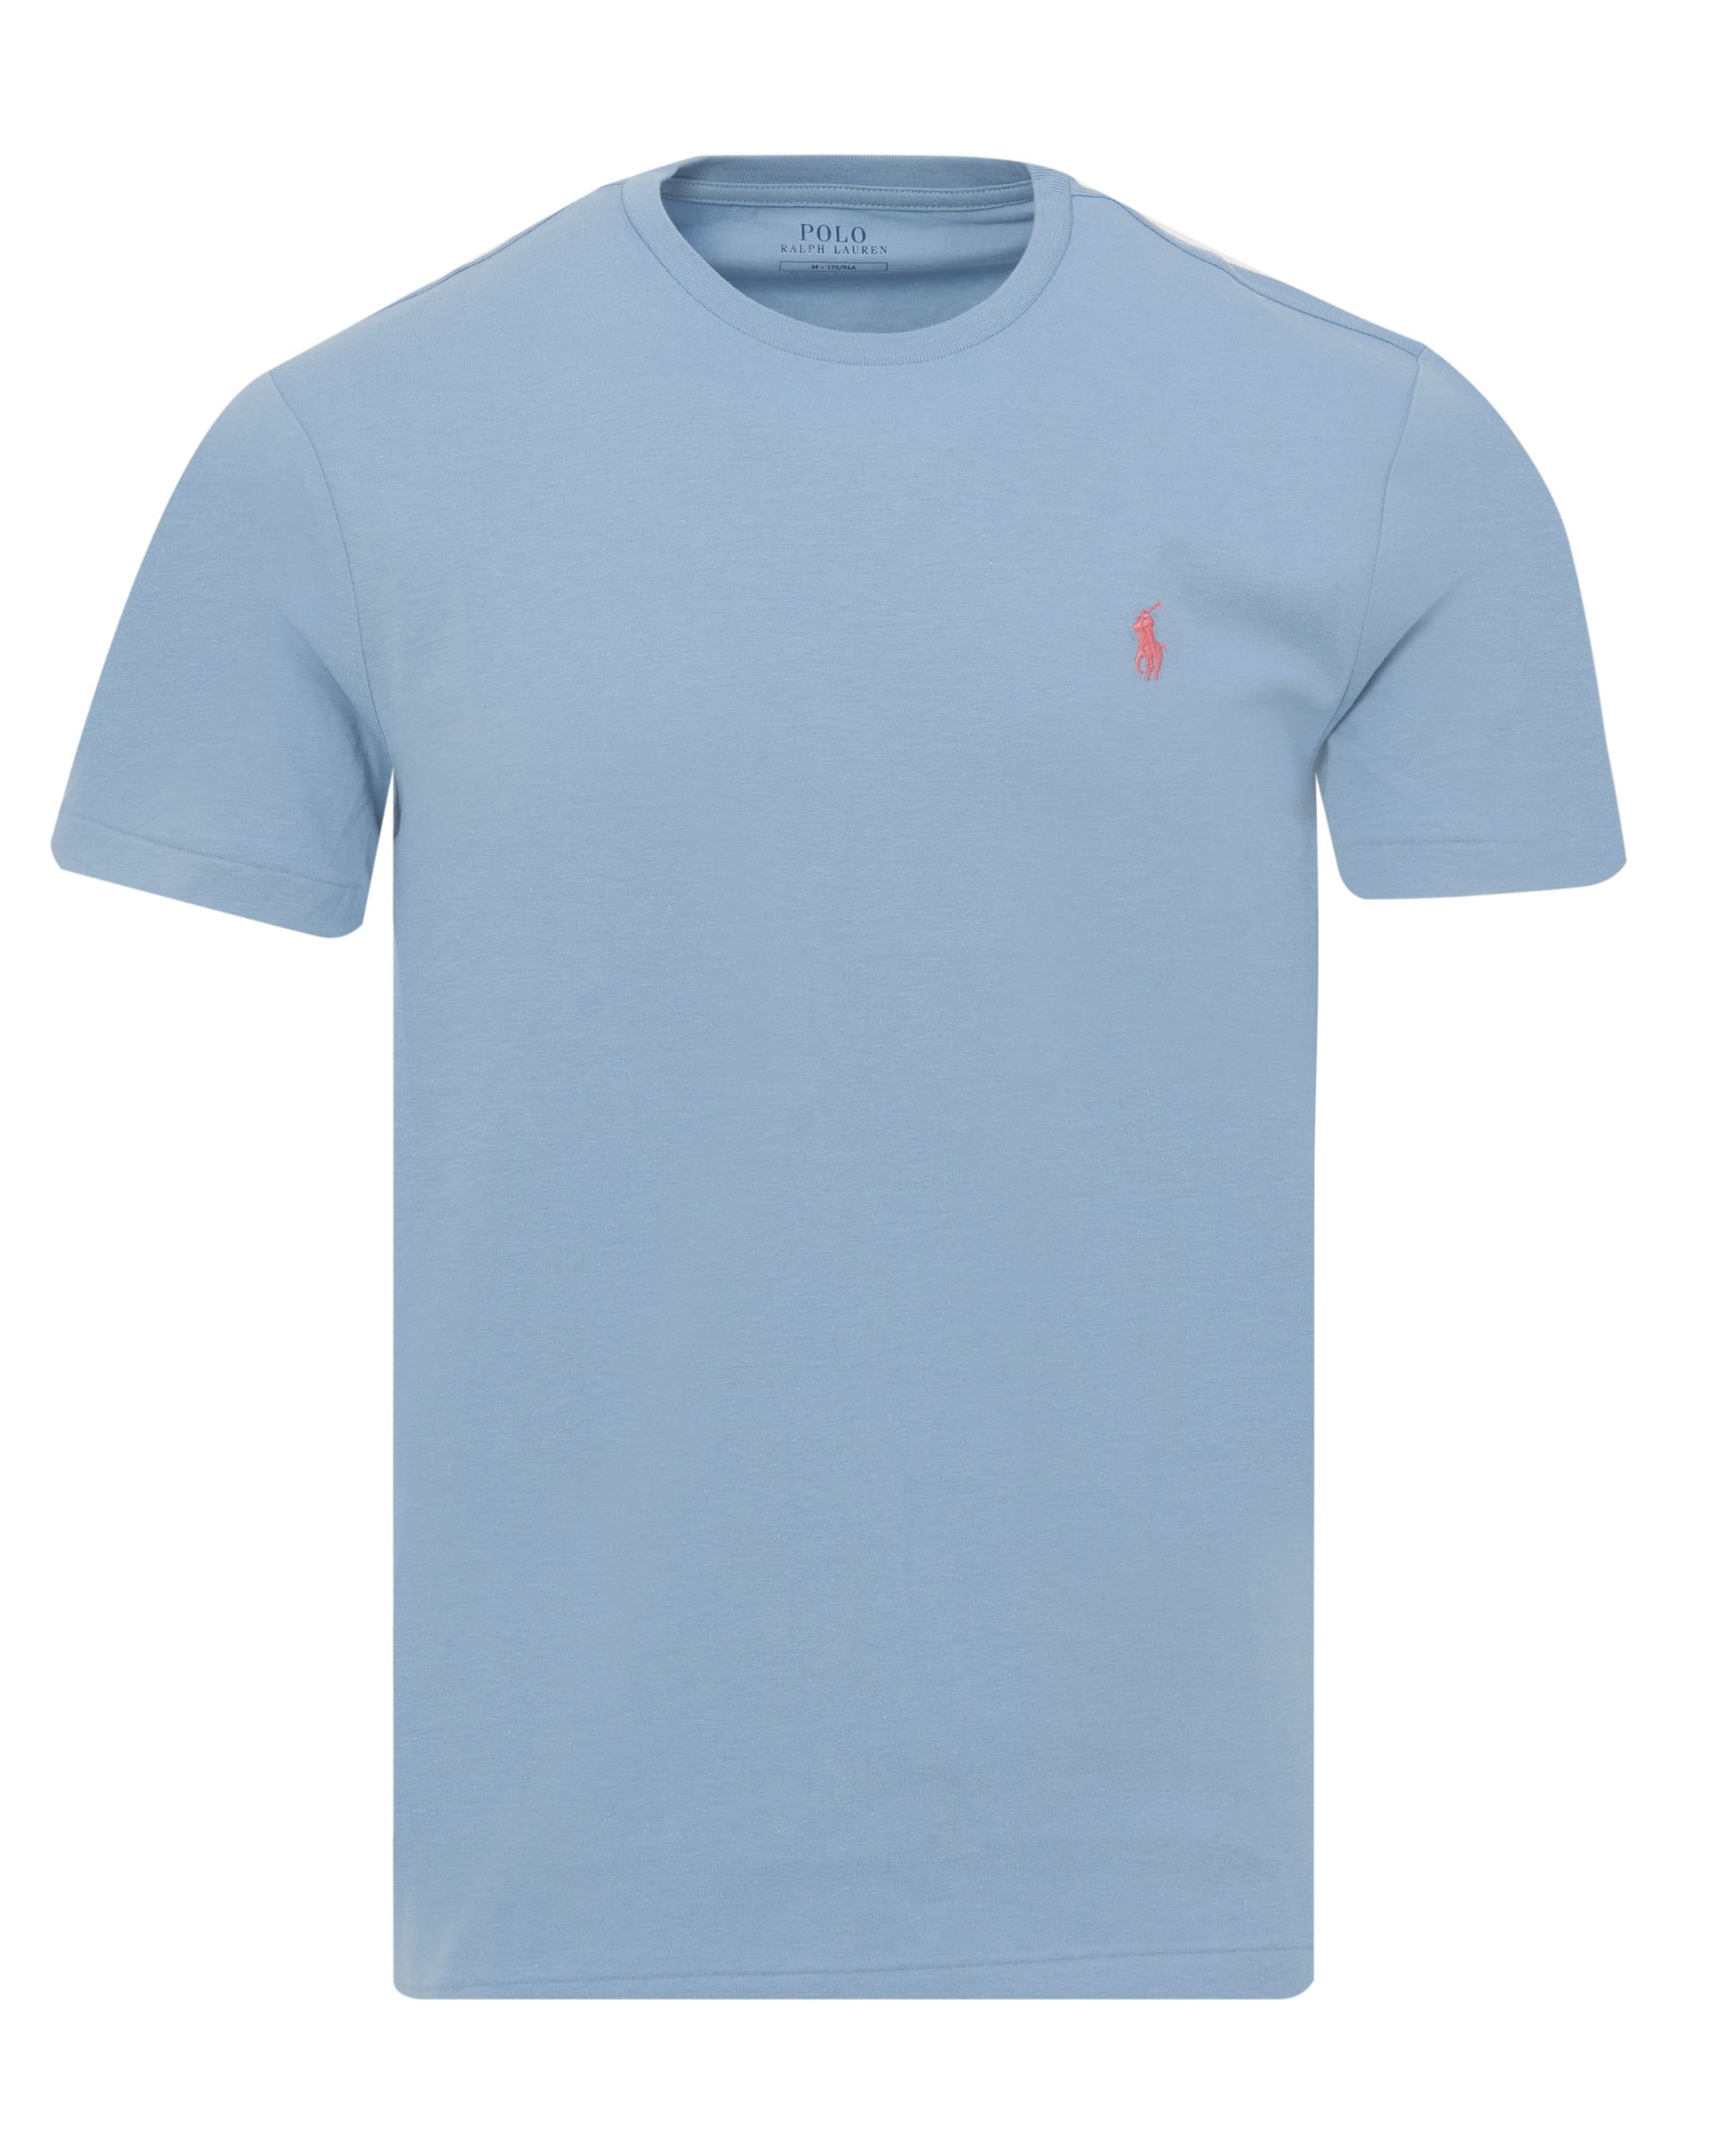 Polo Ralph Lauren T-shirt KM Blauw 083441-001-L